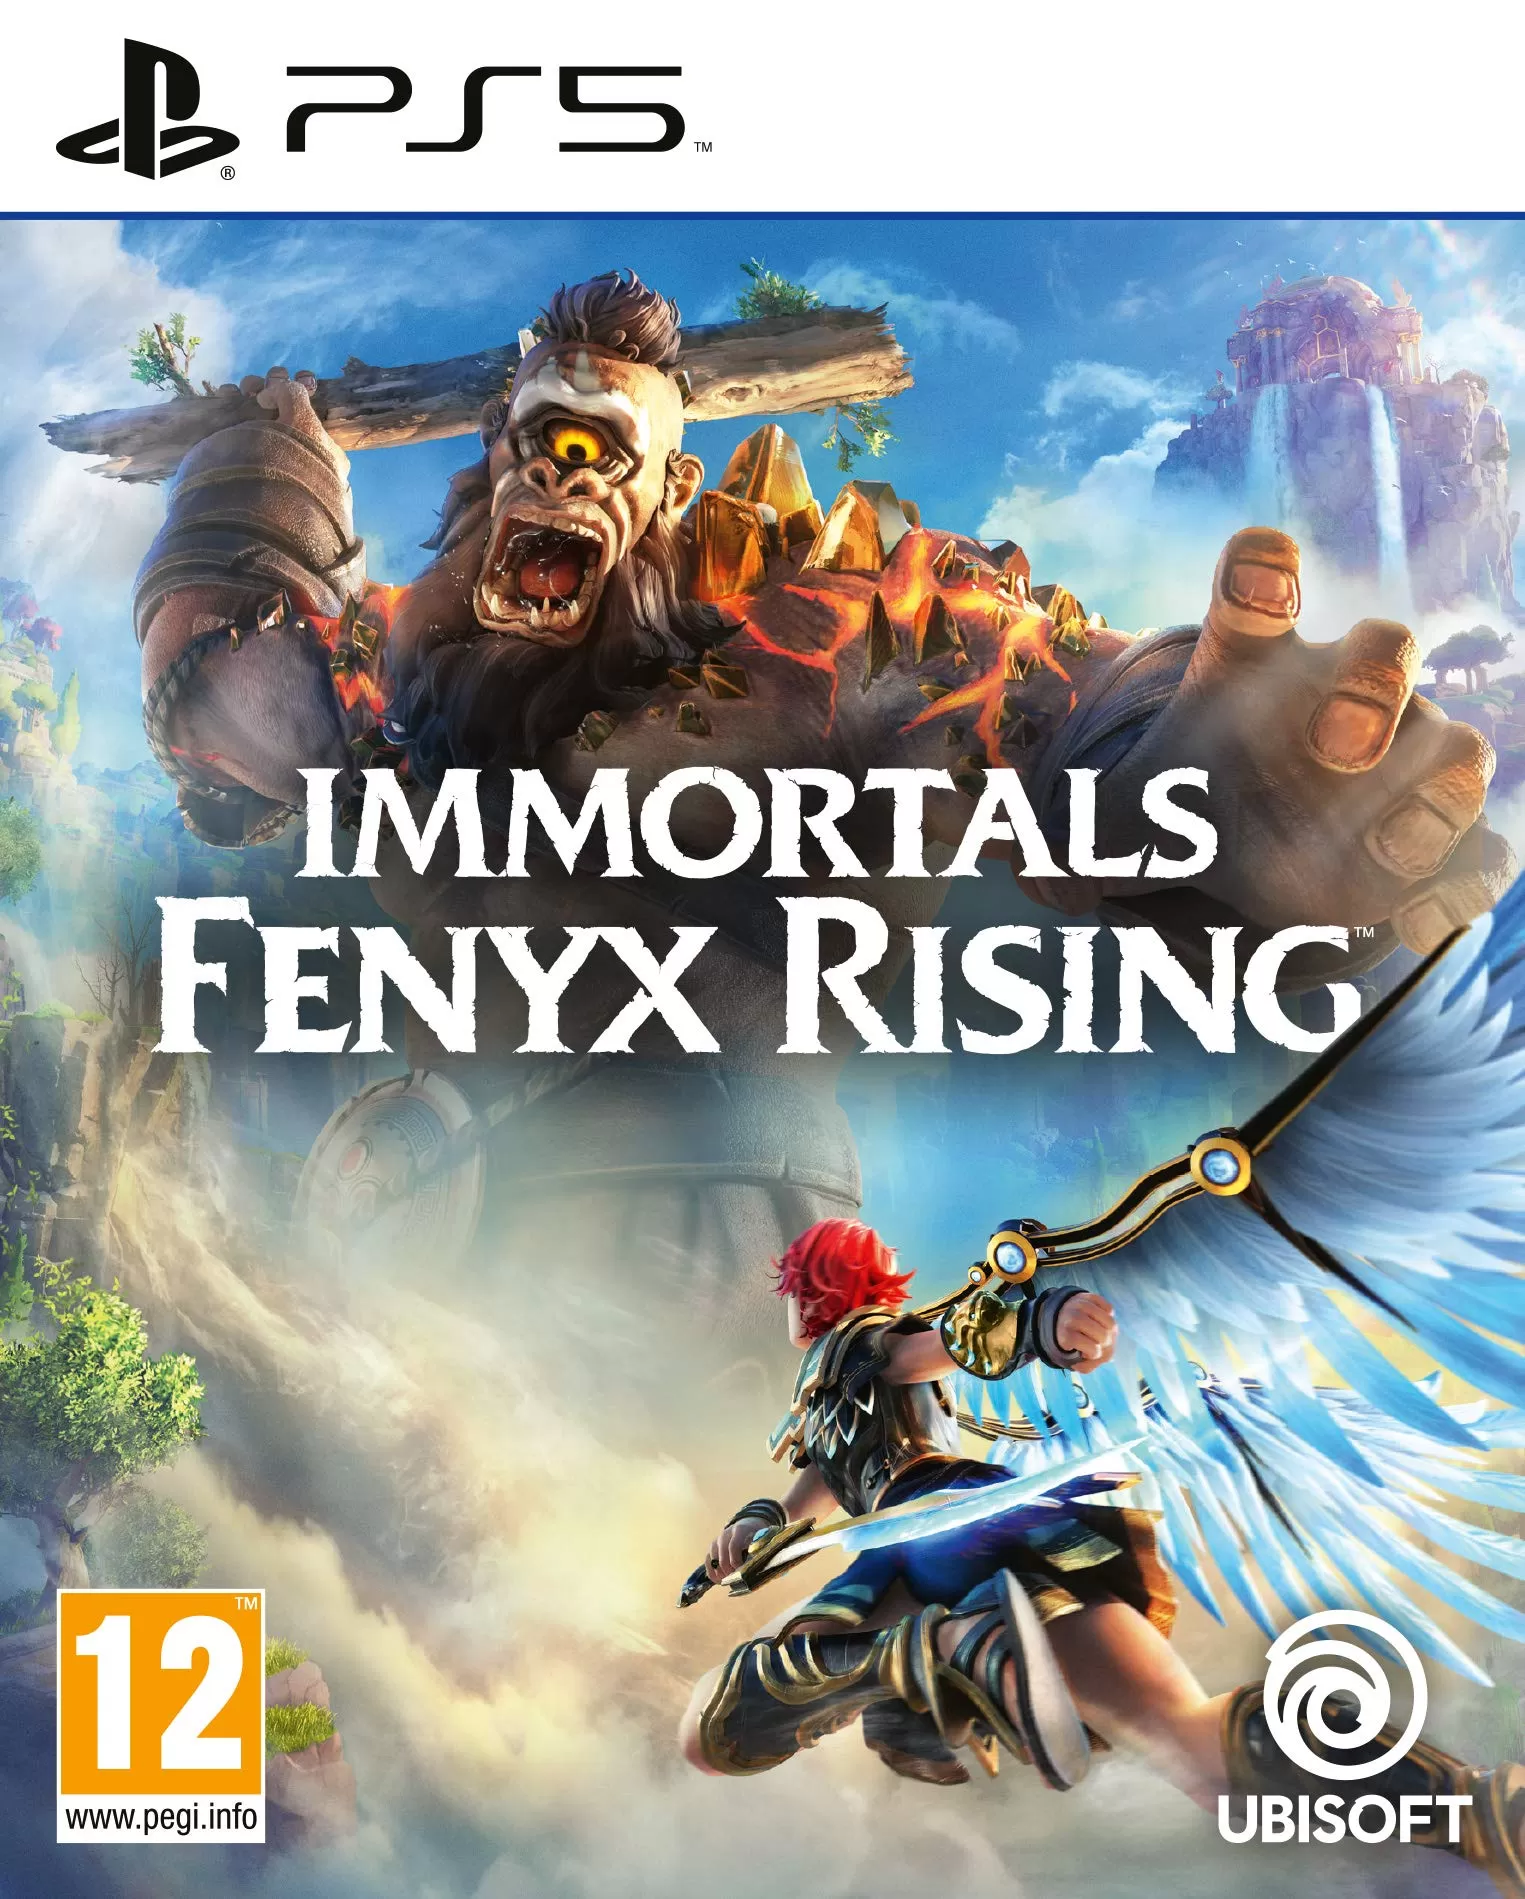 Immortals fenyx rising standard edition - ps5